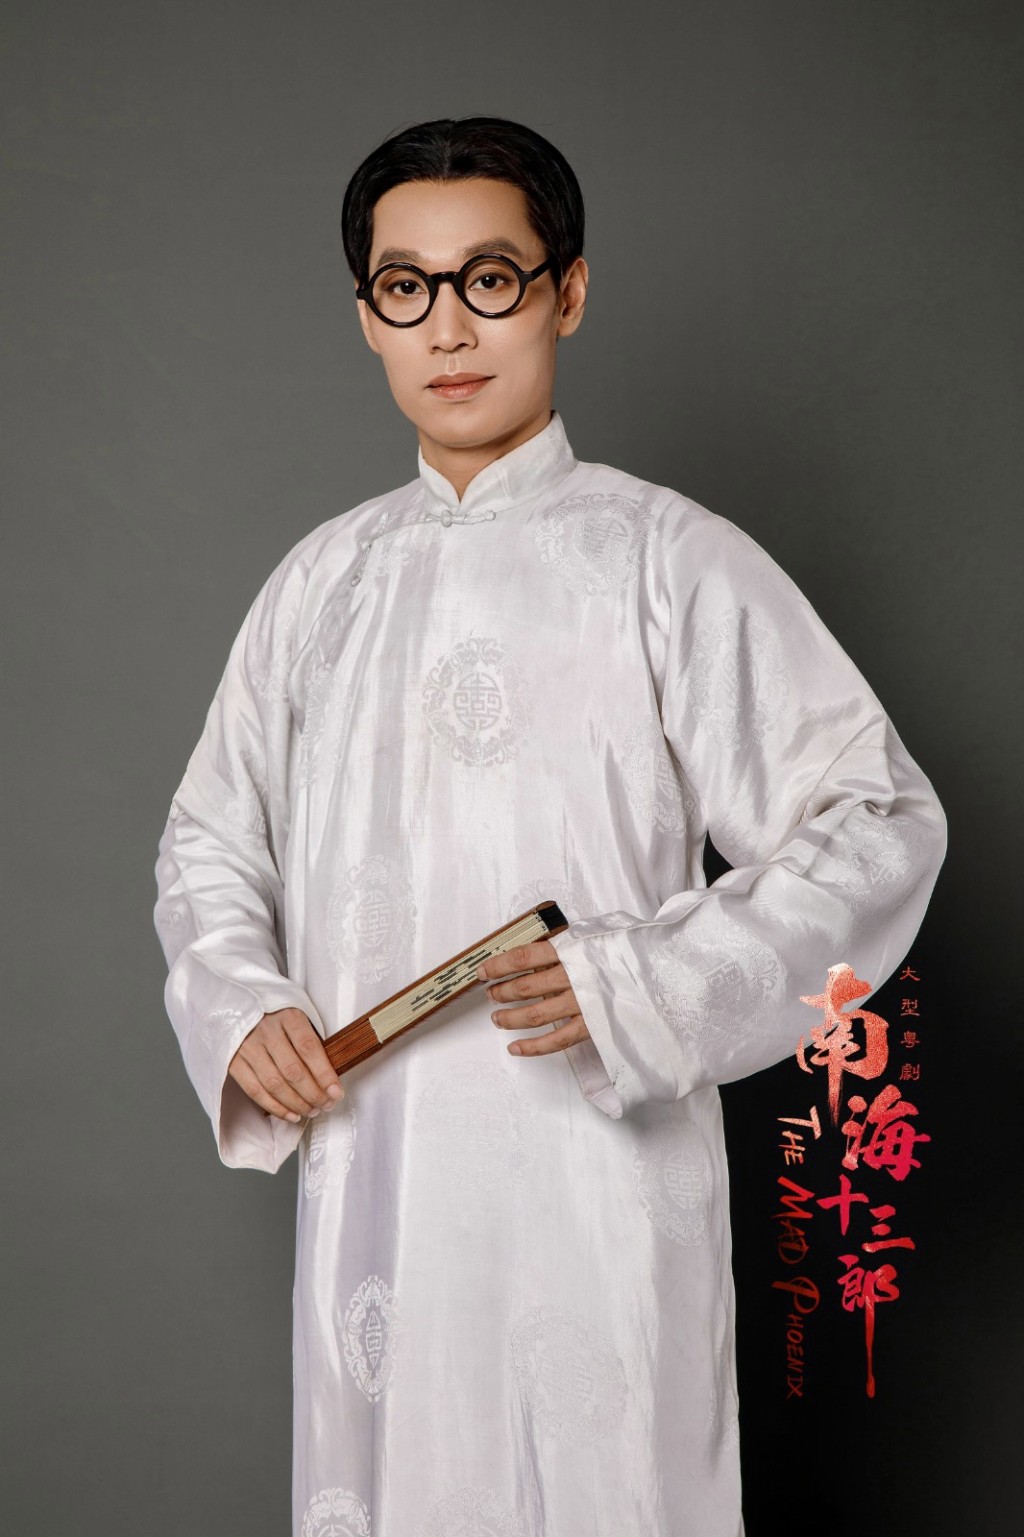 羅家寶愛徒李江崊擔演粵劇版《南海十三郎》男主角 。